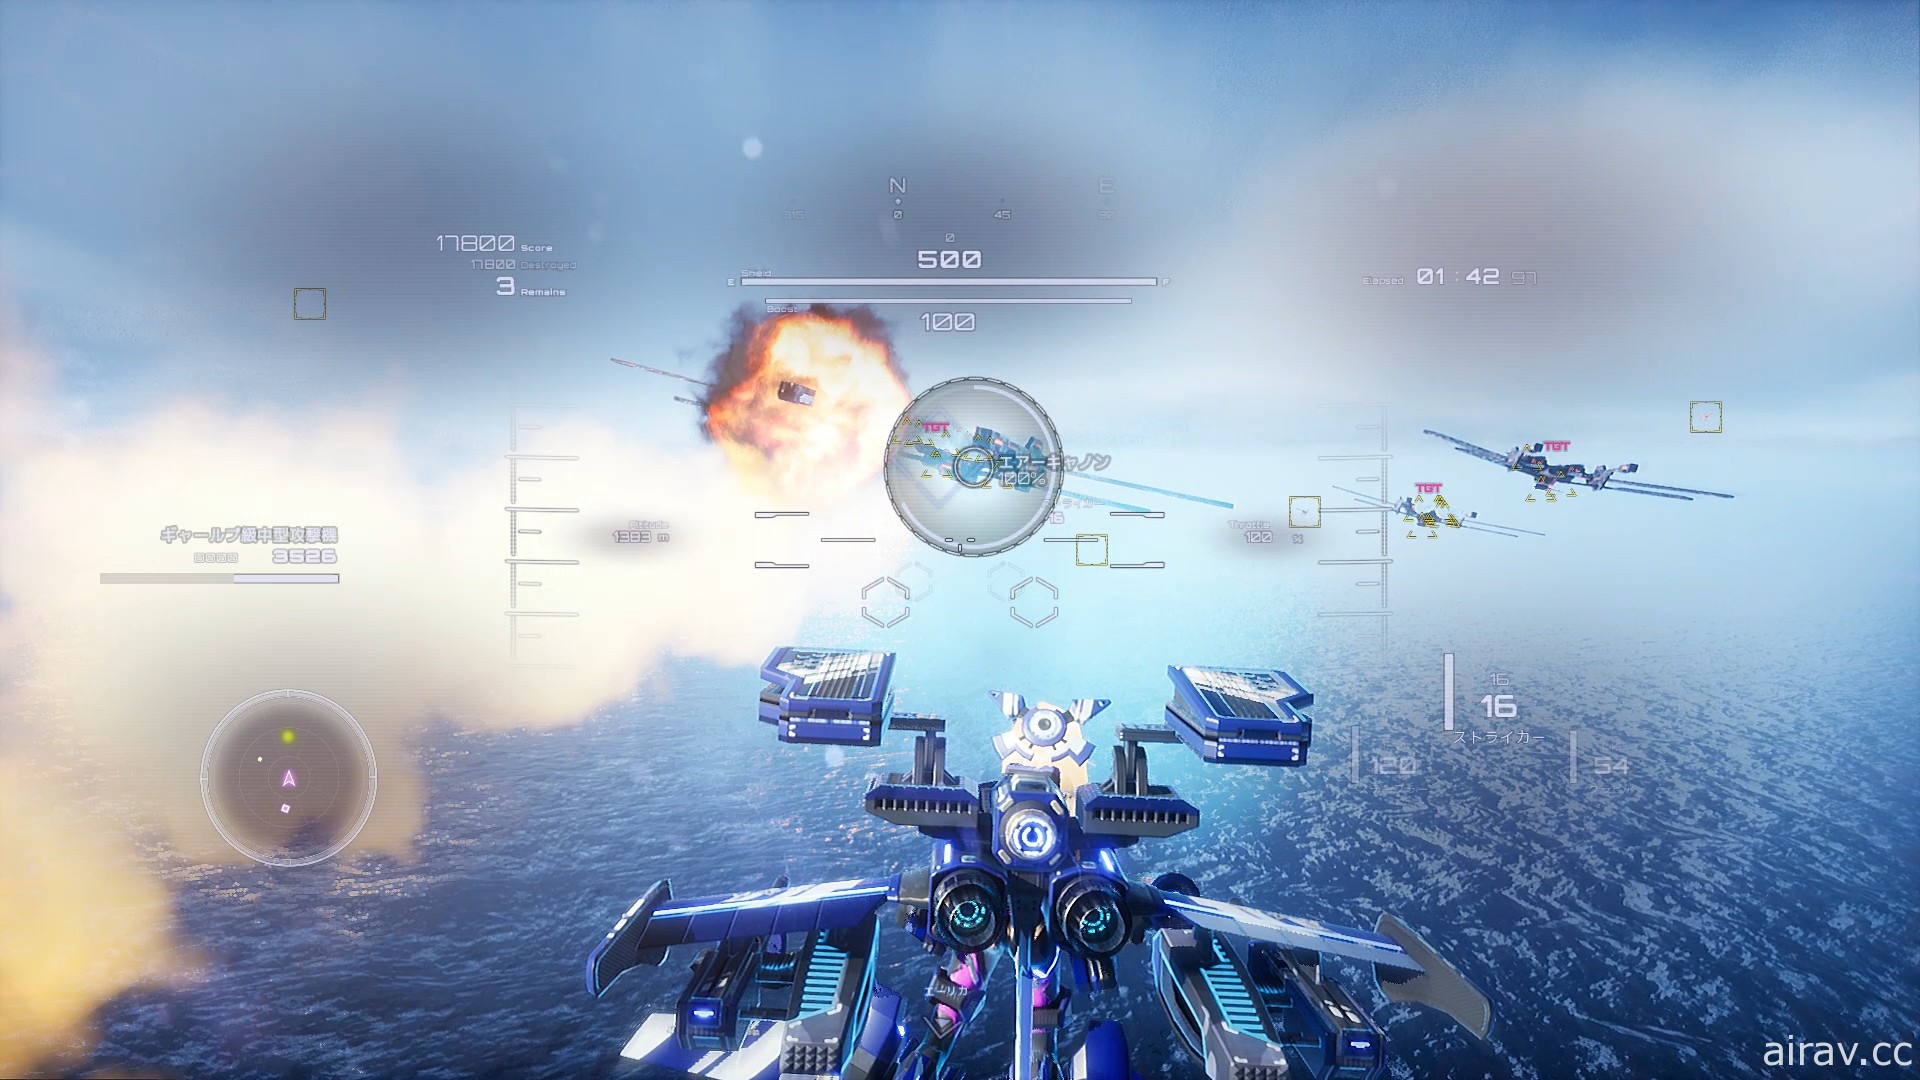 高速 3D 射擊遊戲《鐵翼少女》2021 年 2 月推出 翱翔天際對抗虛無者的致命威脅